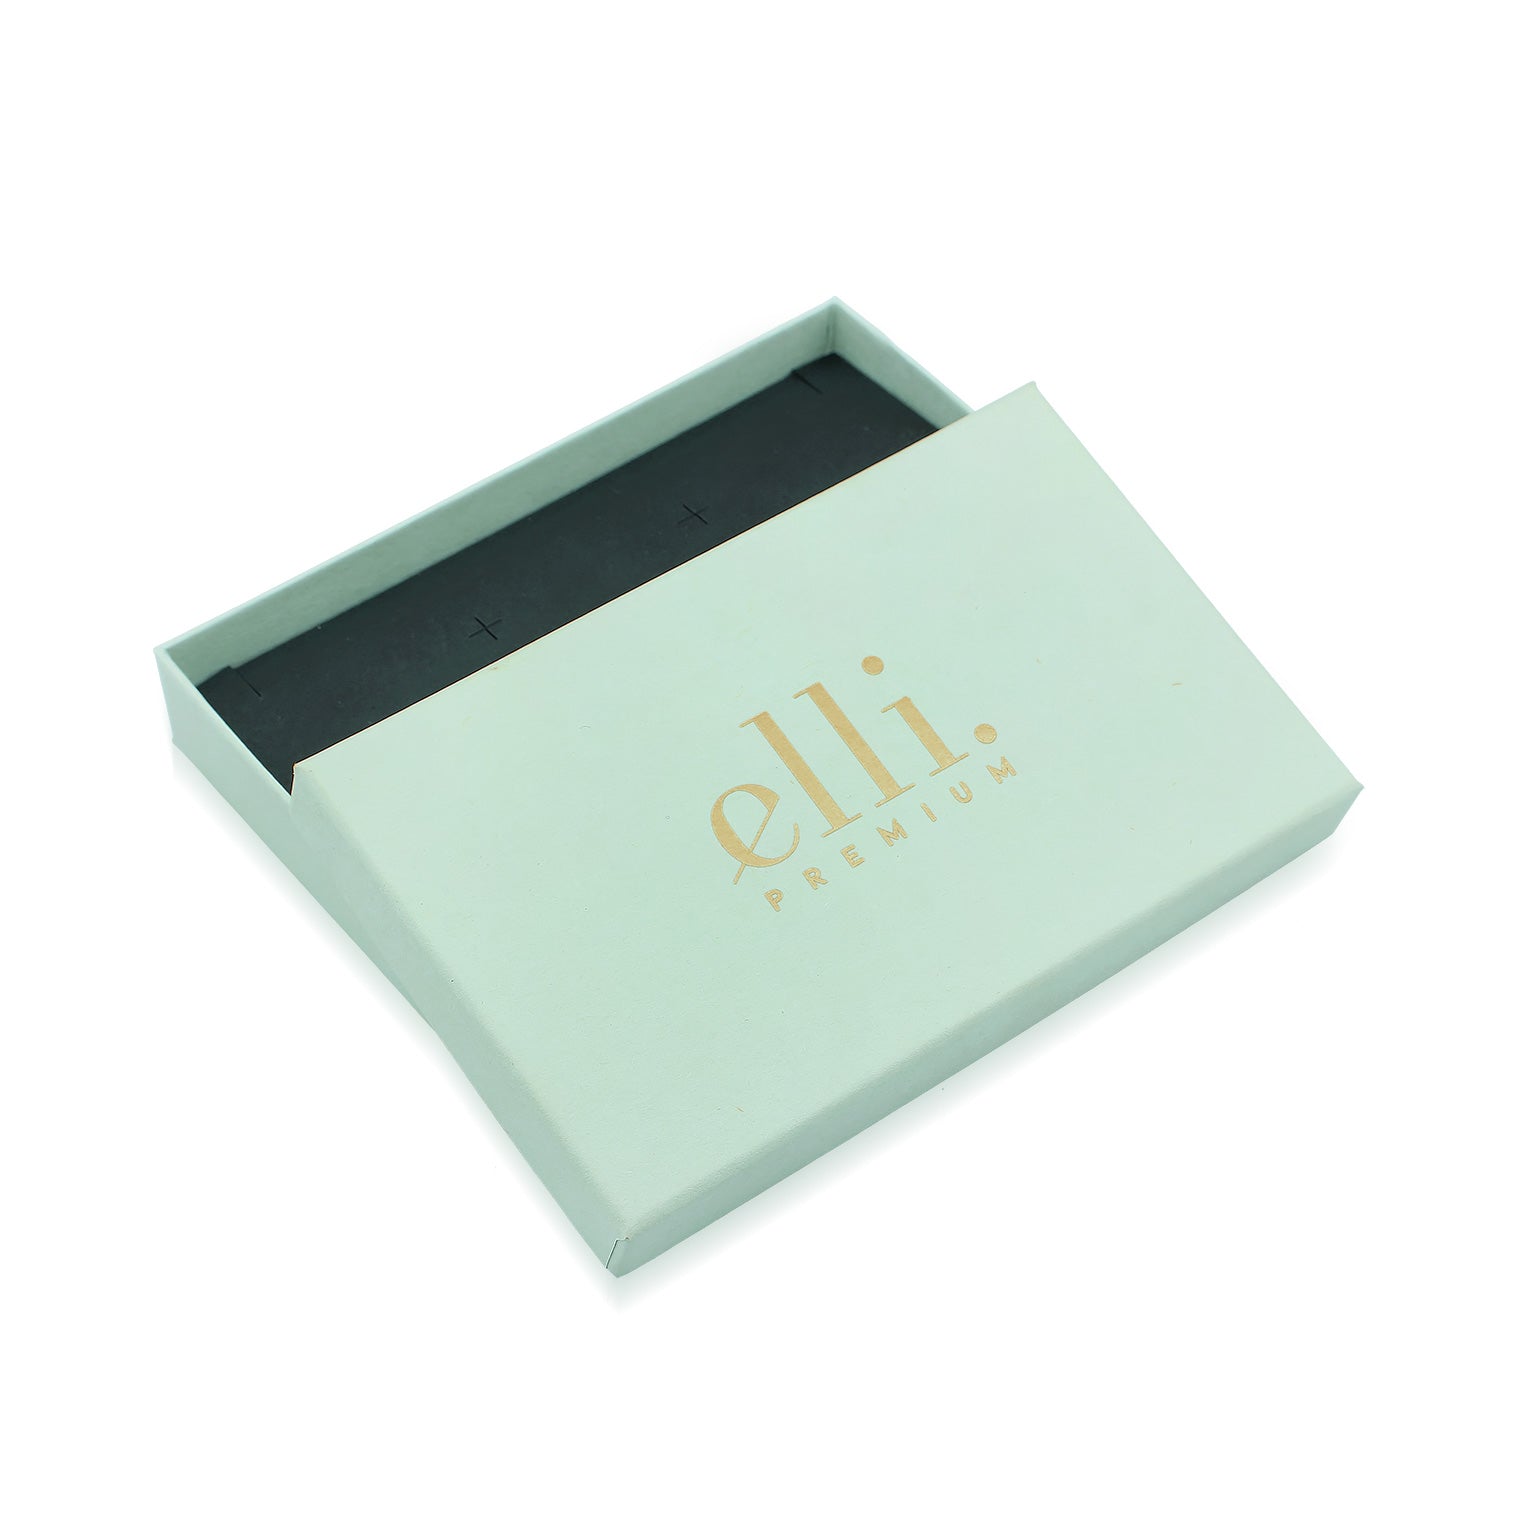 Hellgrün - Elli PREMIUM | Geschenkverpackung XL | für Armbänder oder Choker